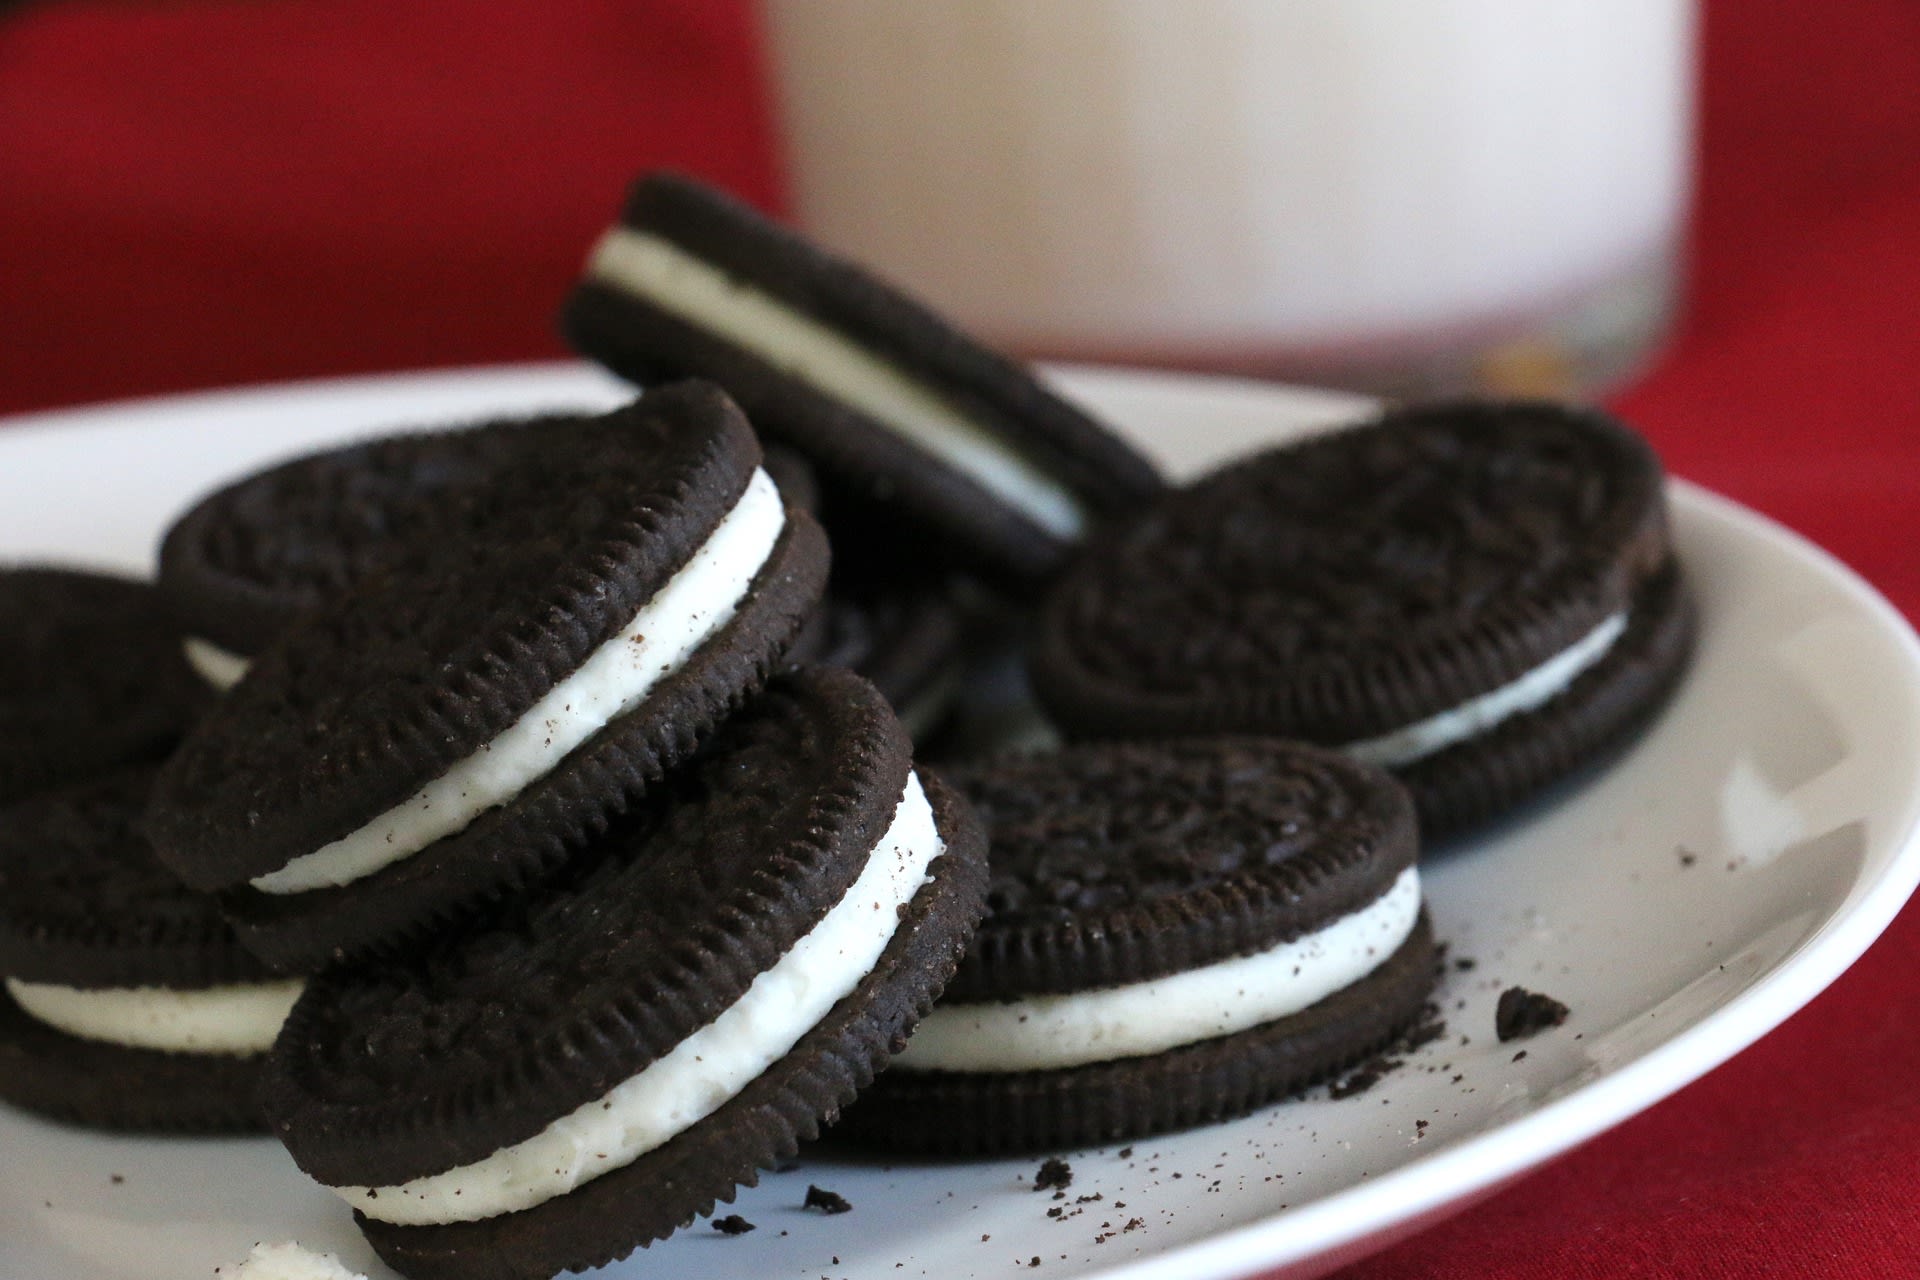 'Oreo-koekjes zwart door giftig ammoniak, overheid wist ervan'